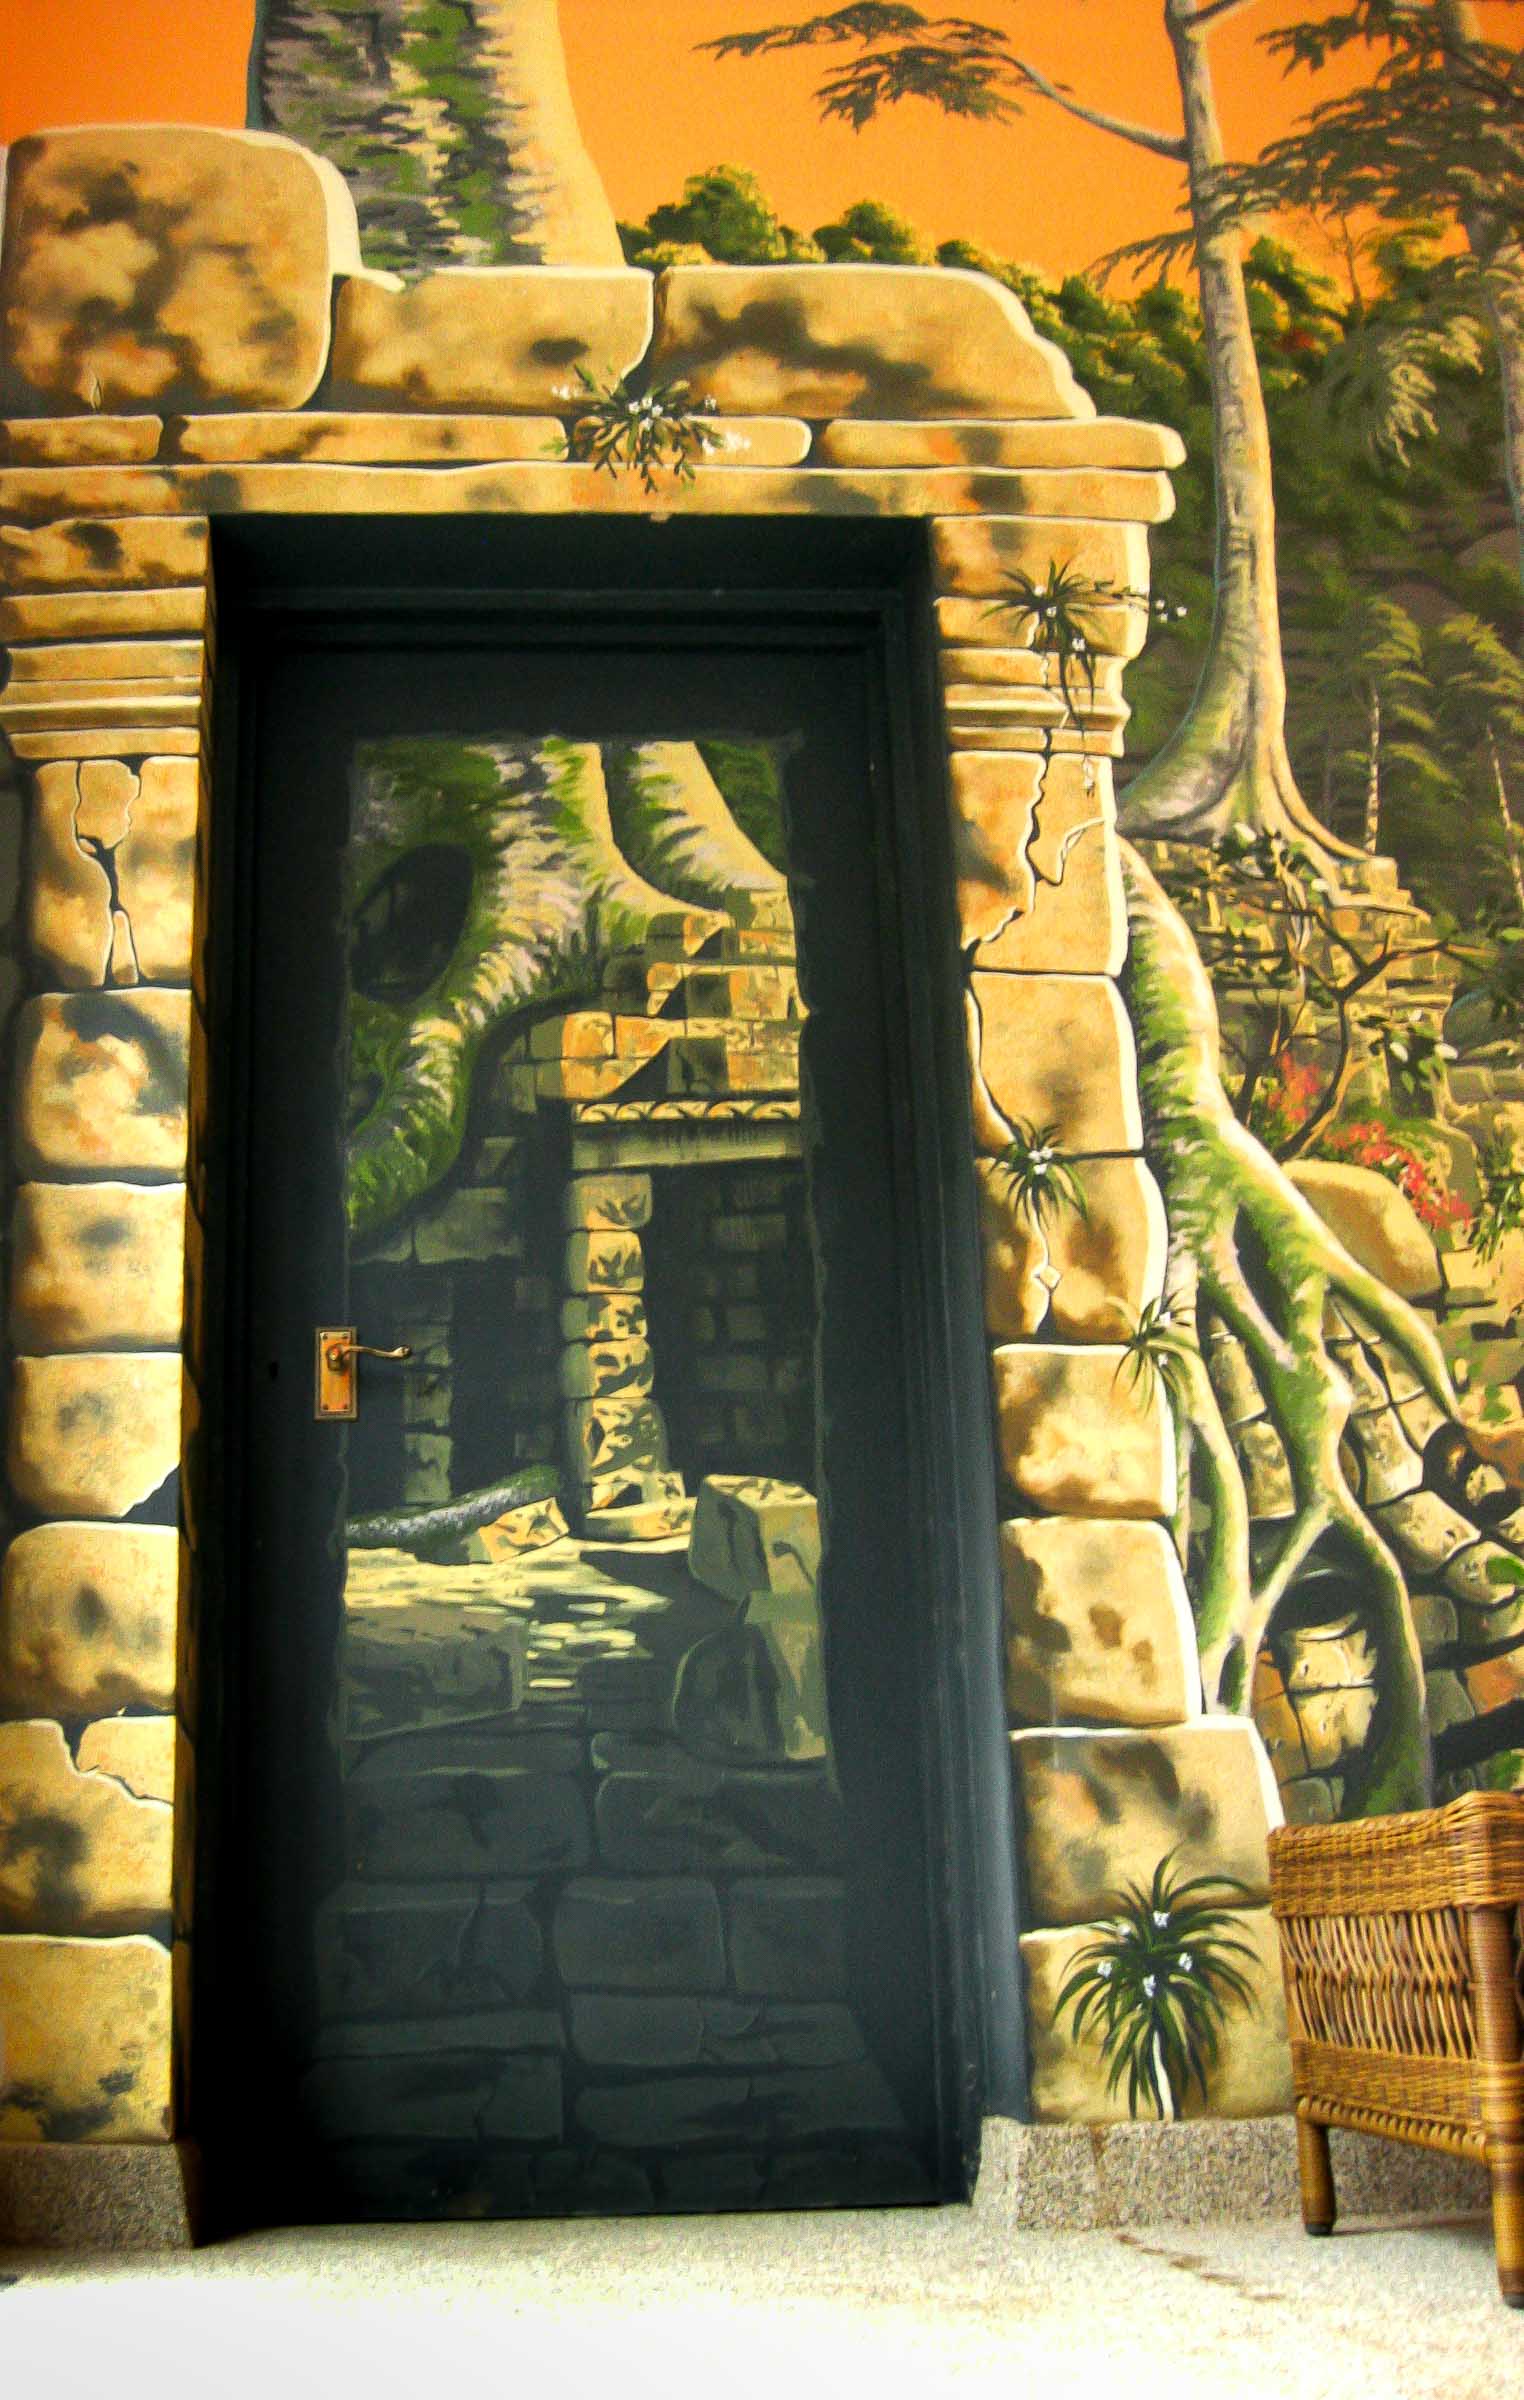 Disguised doorway in Temple Ruins mural